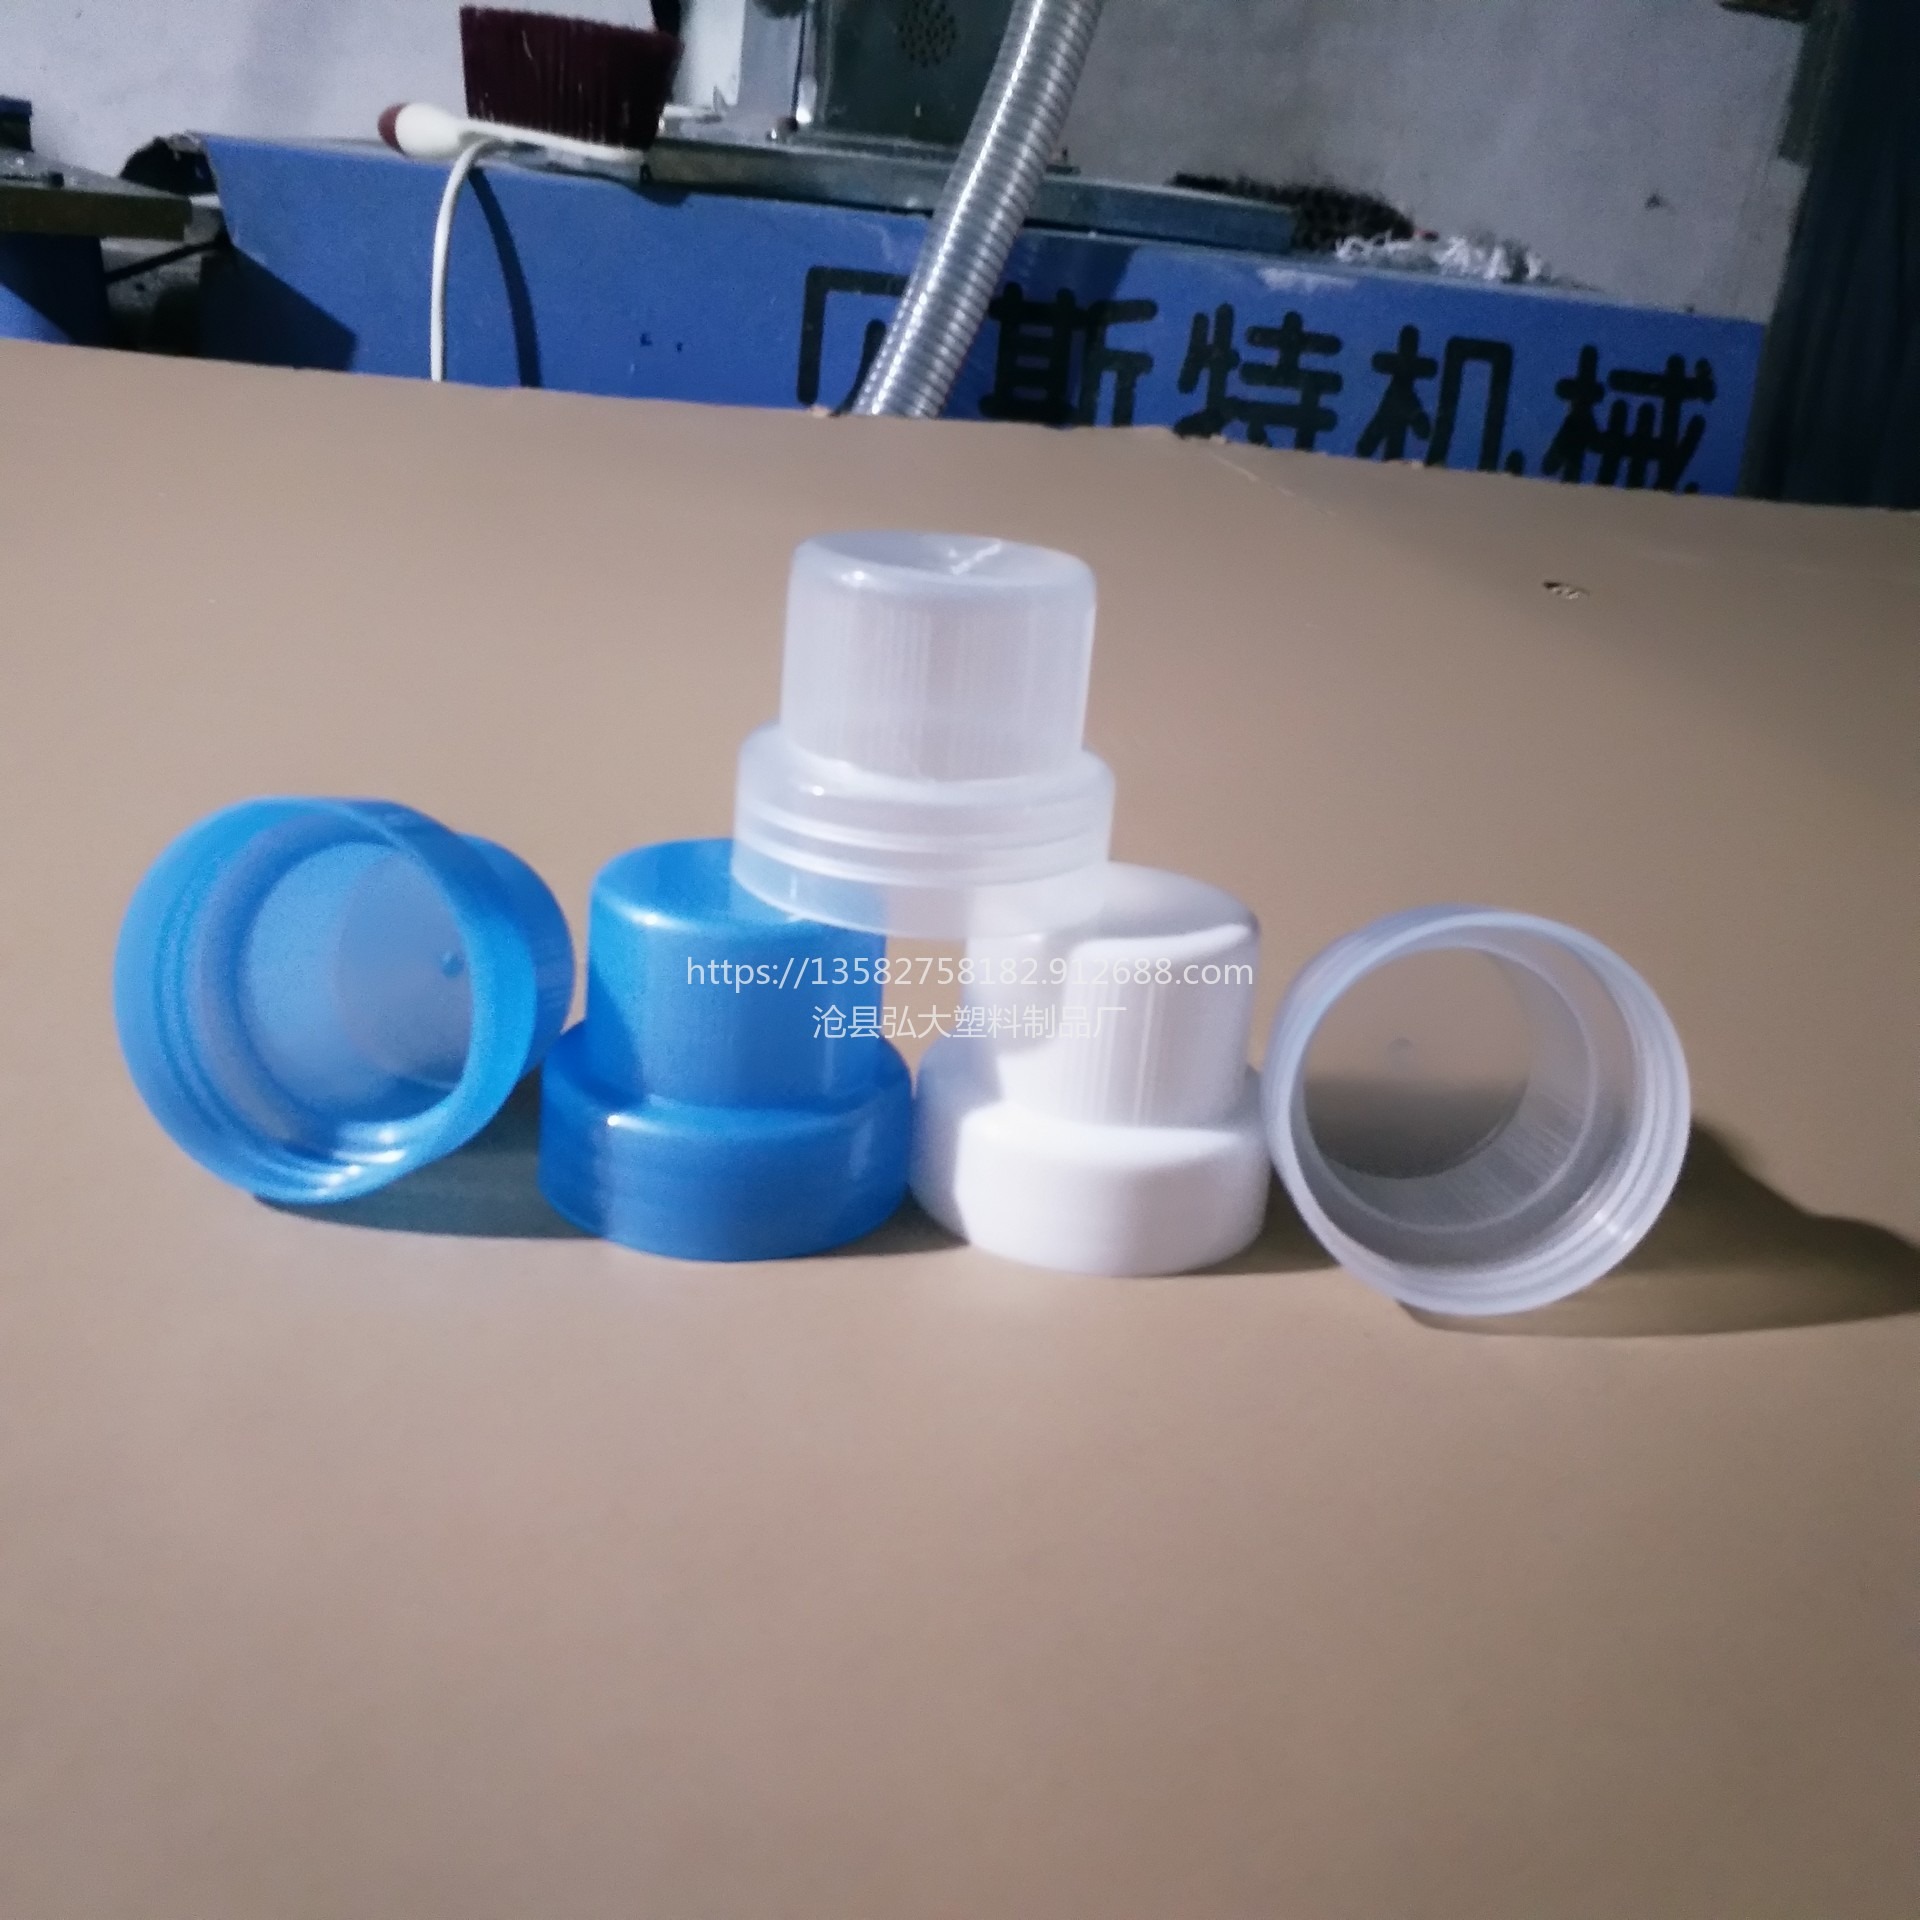 弘大塑业 食用塑料桶盖 厂家直销 颜色可定制 一升盖中盖图片